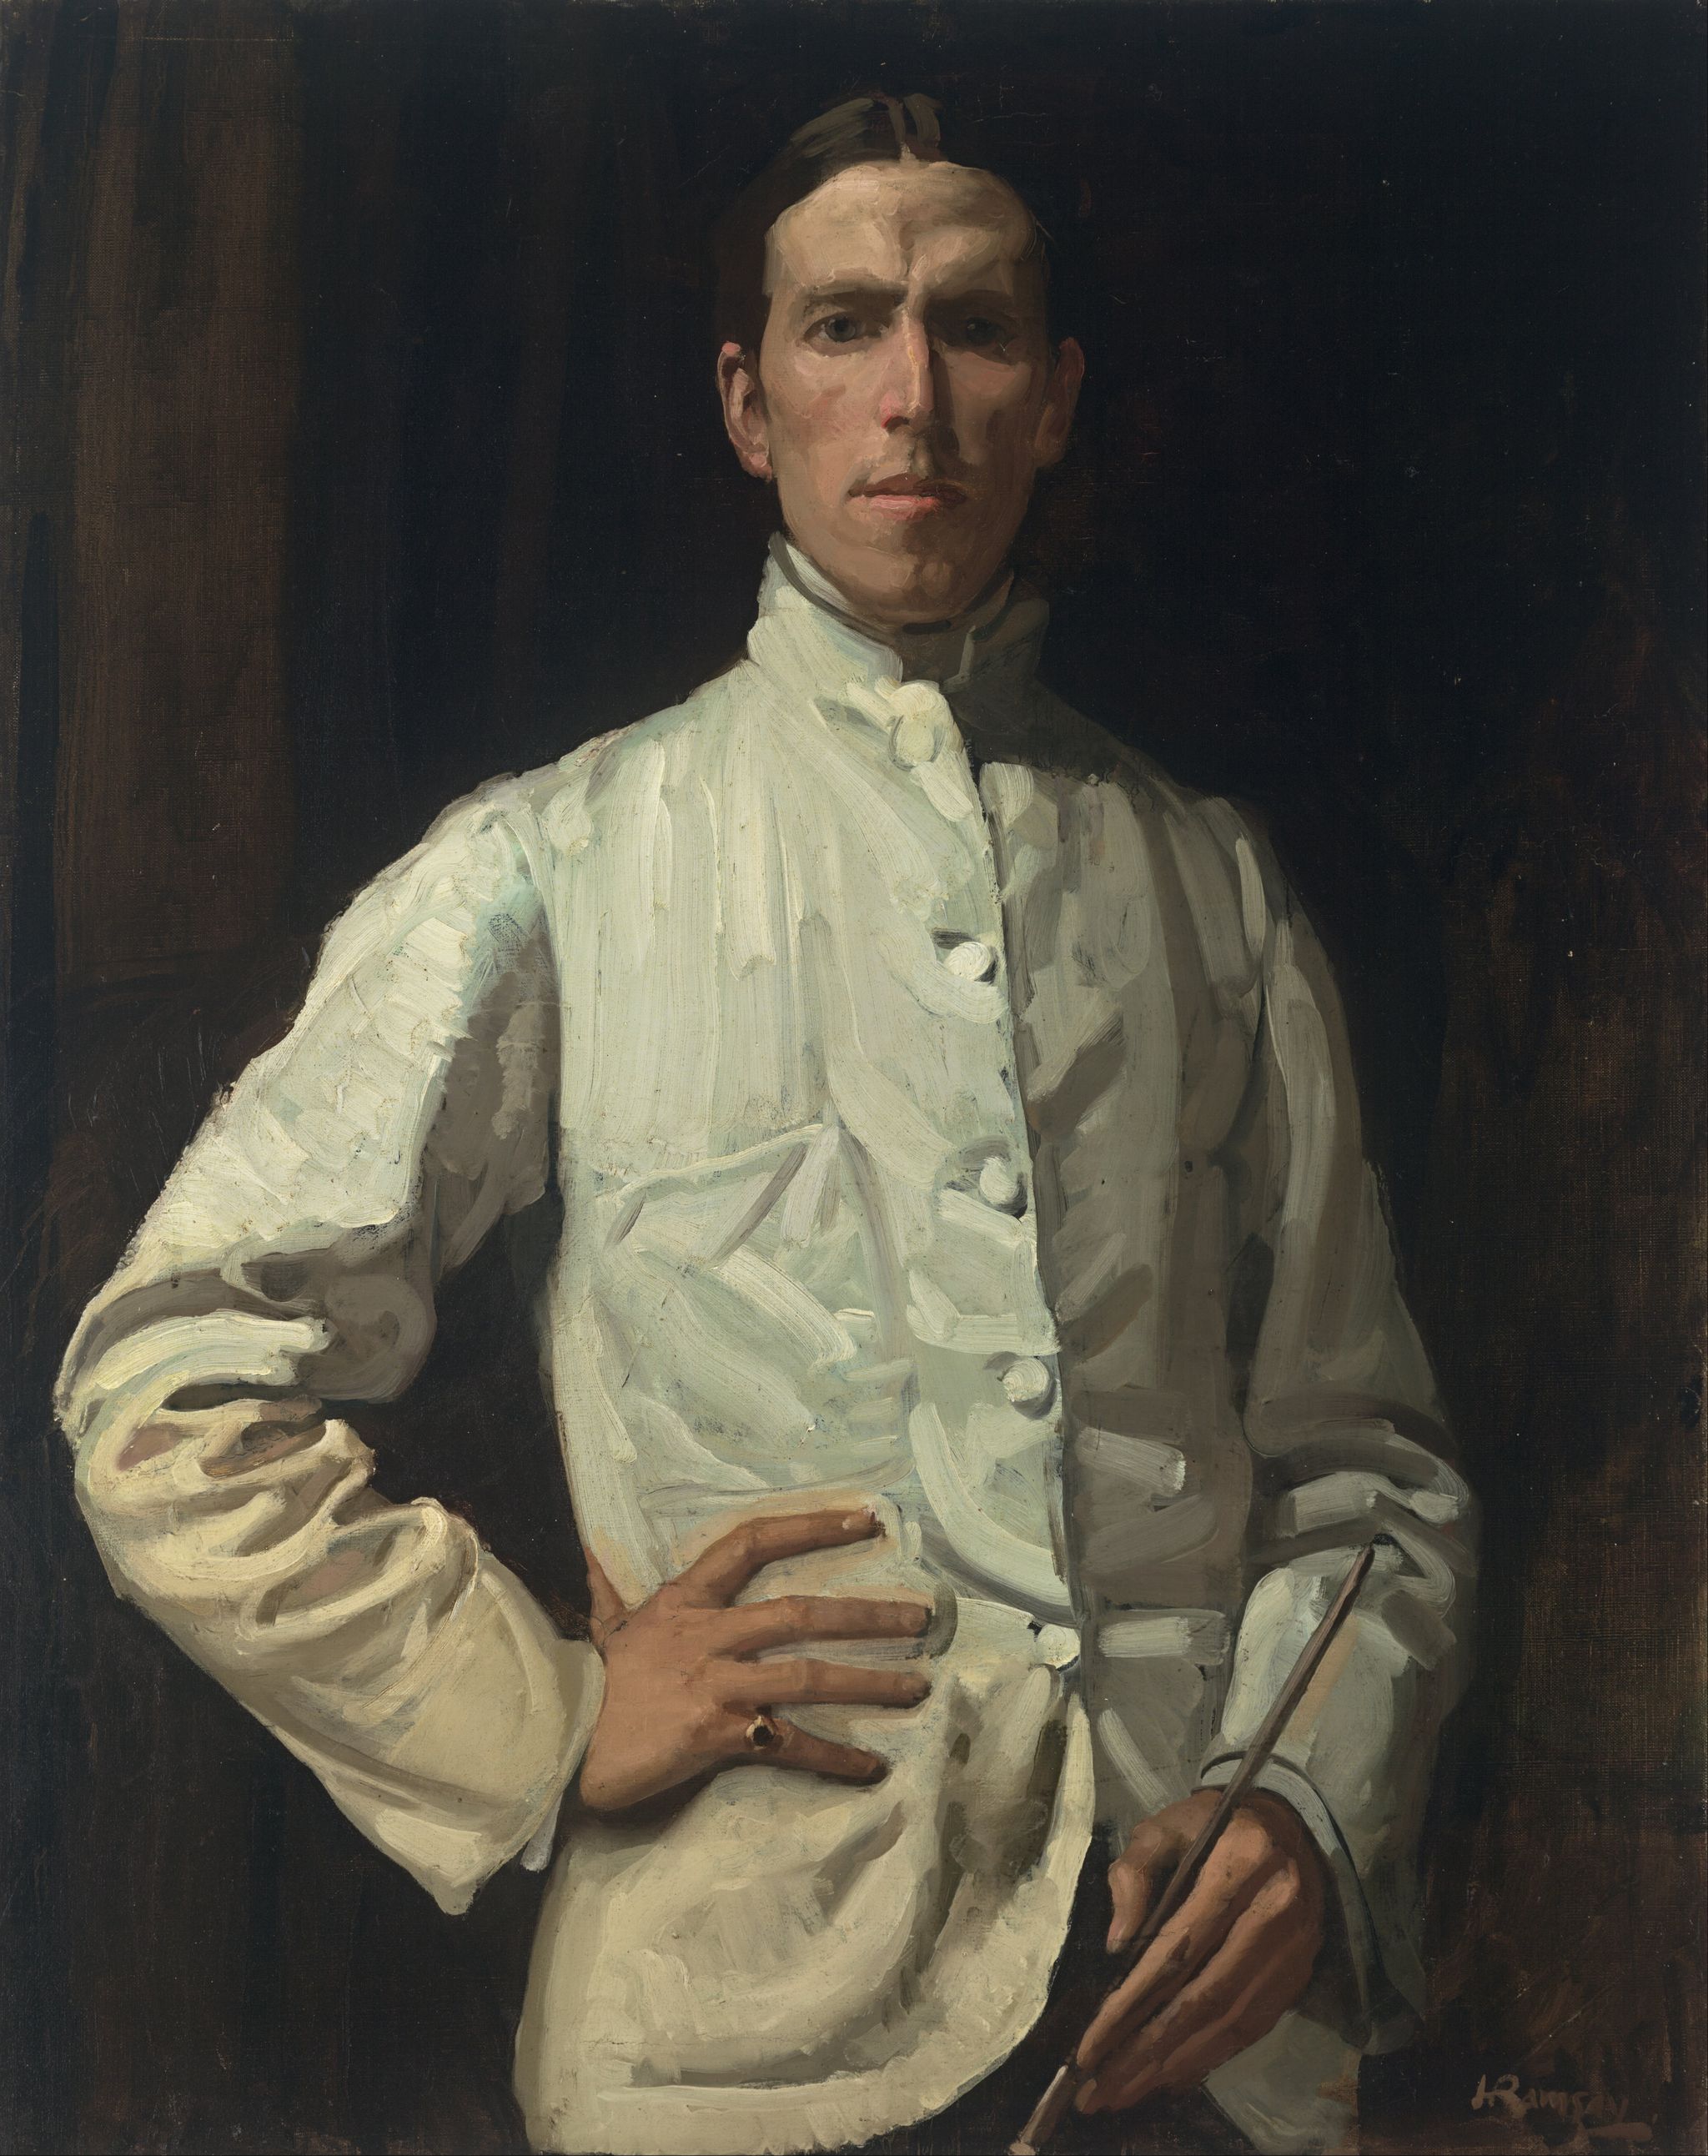 Self-portrait in white jacket